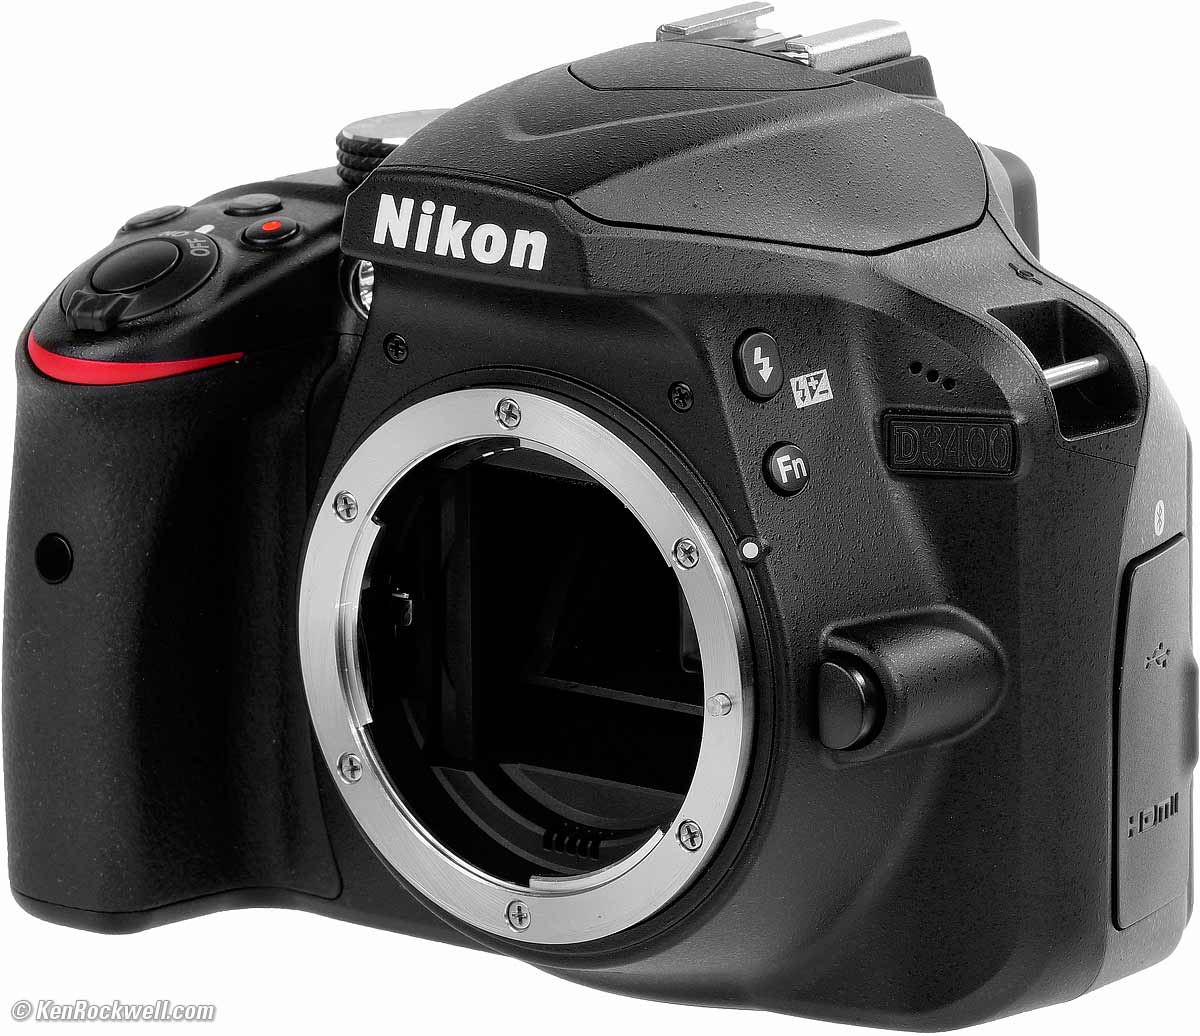 Nikon D3400 Review